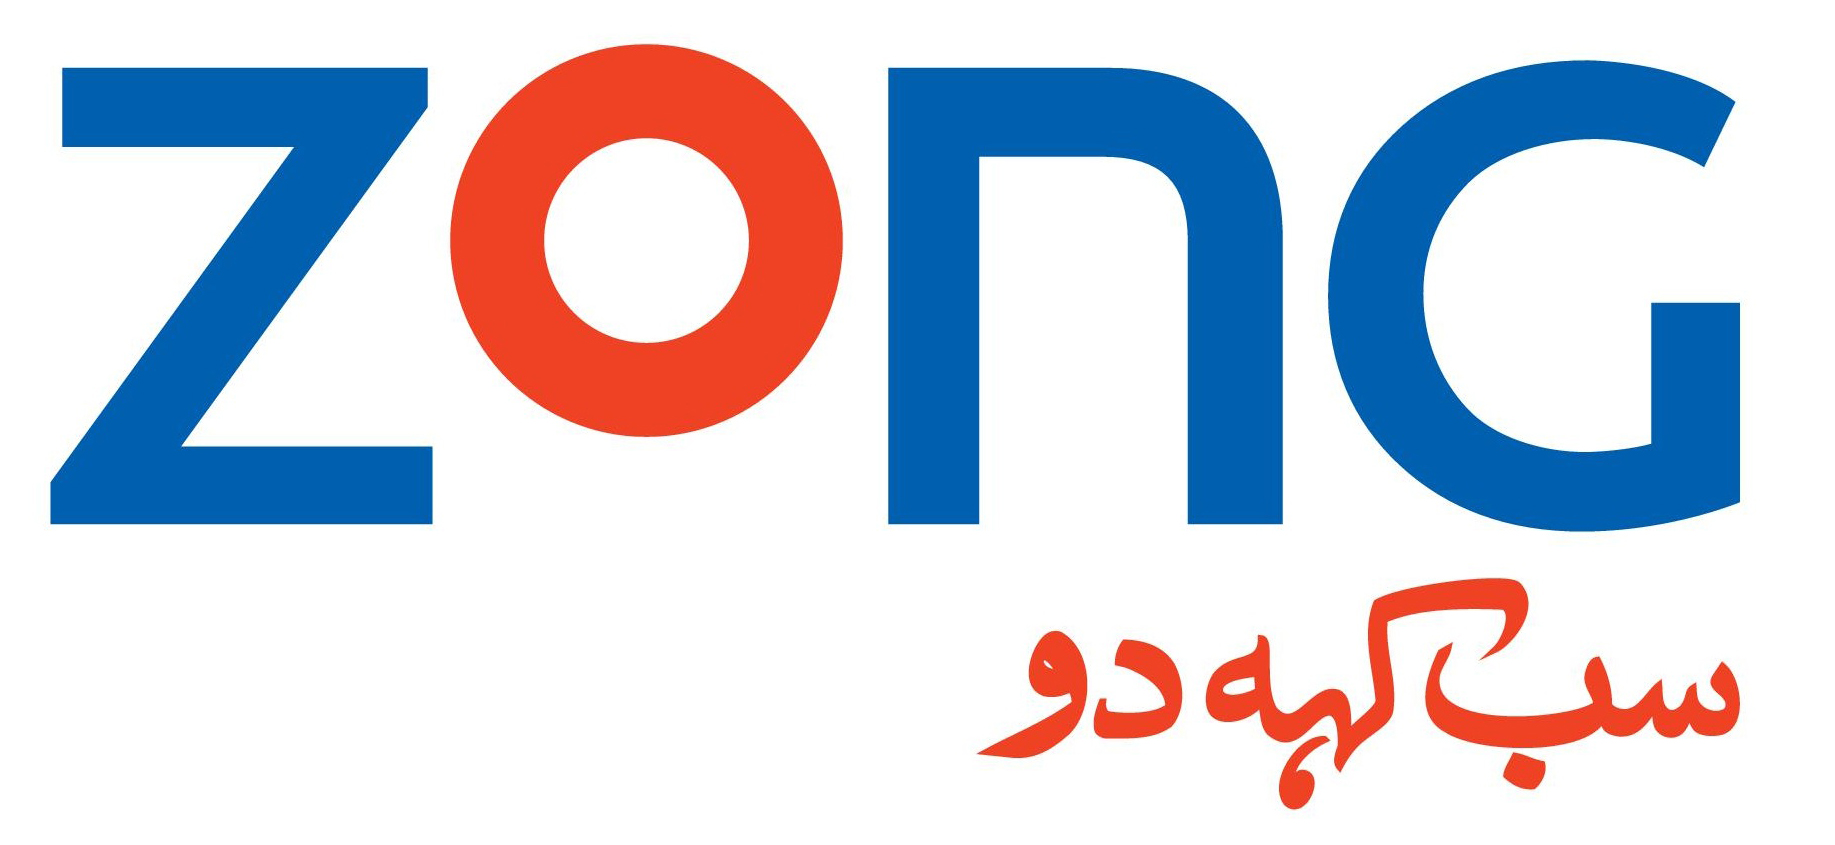 Zong Brand Logo